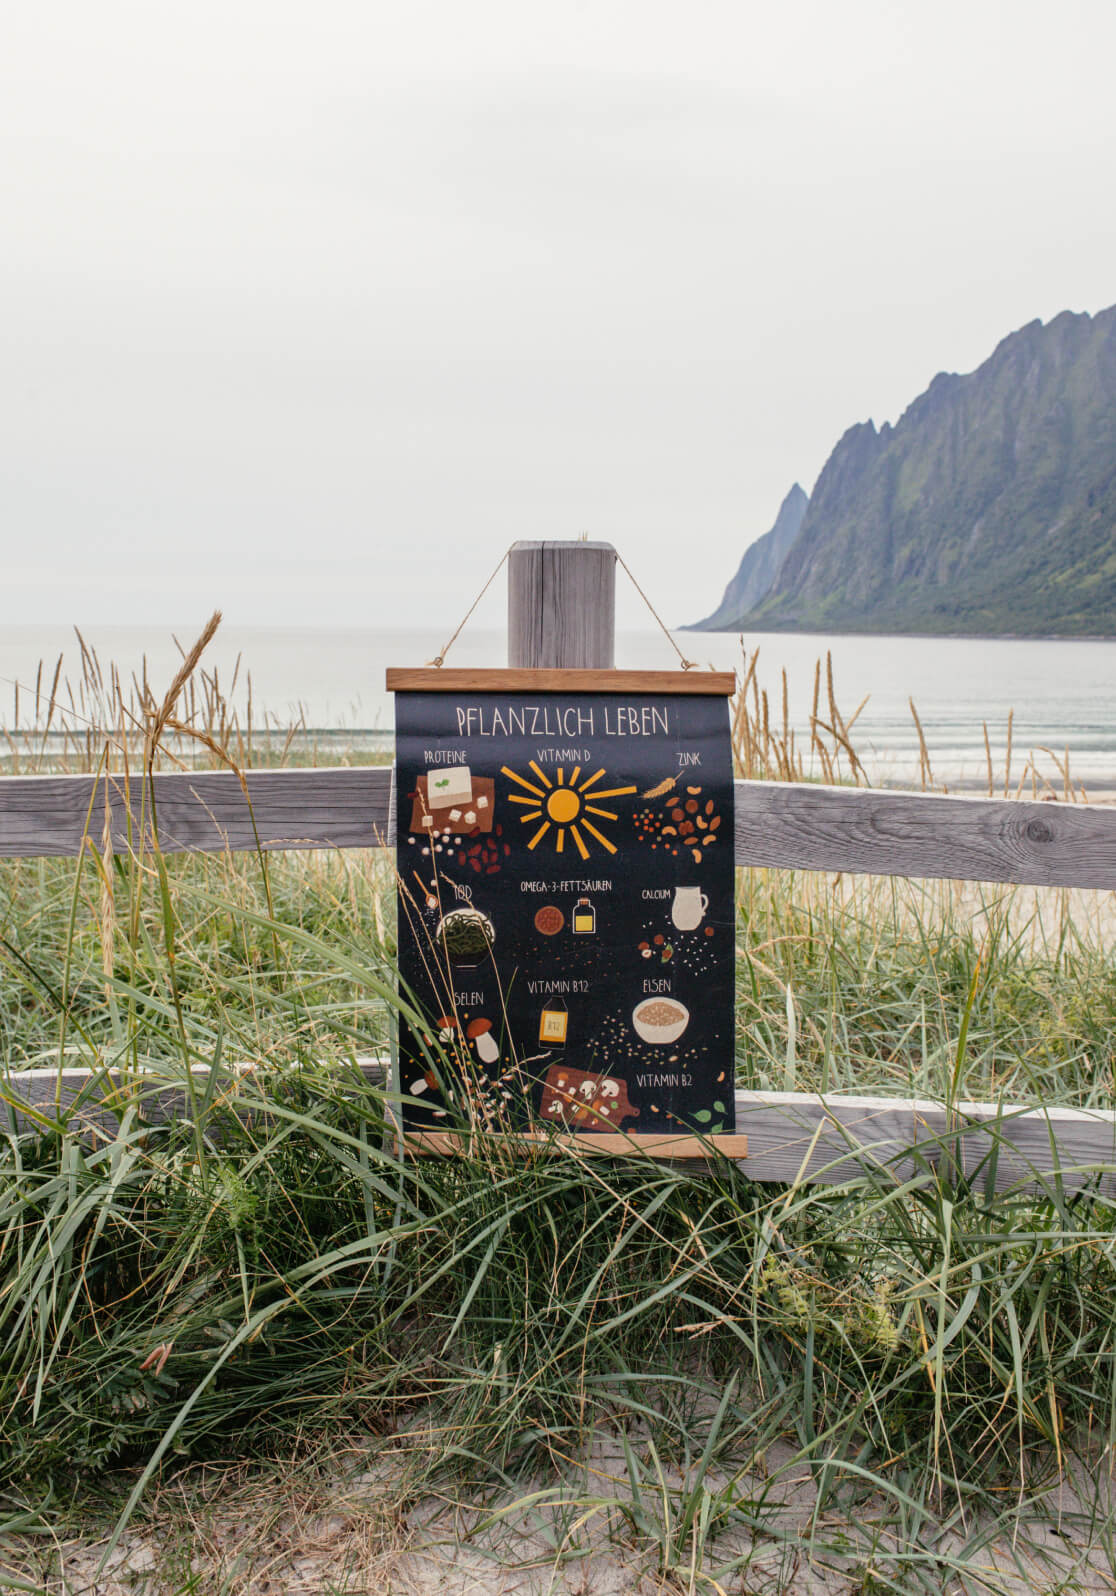 Das Pflanzlich leben mit allen wichtigen veganen Nährstoffen hängt mit der passenden Posterleiste an einem Holzstamm am Strand in Norwegen.